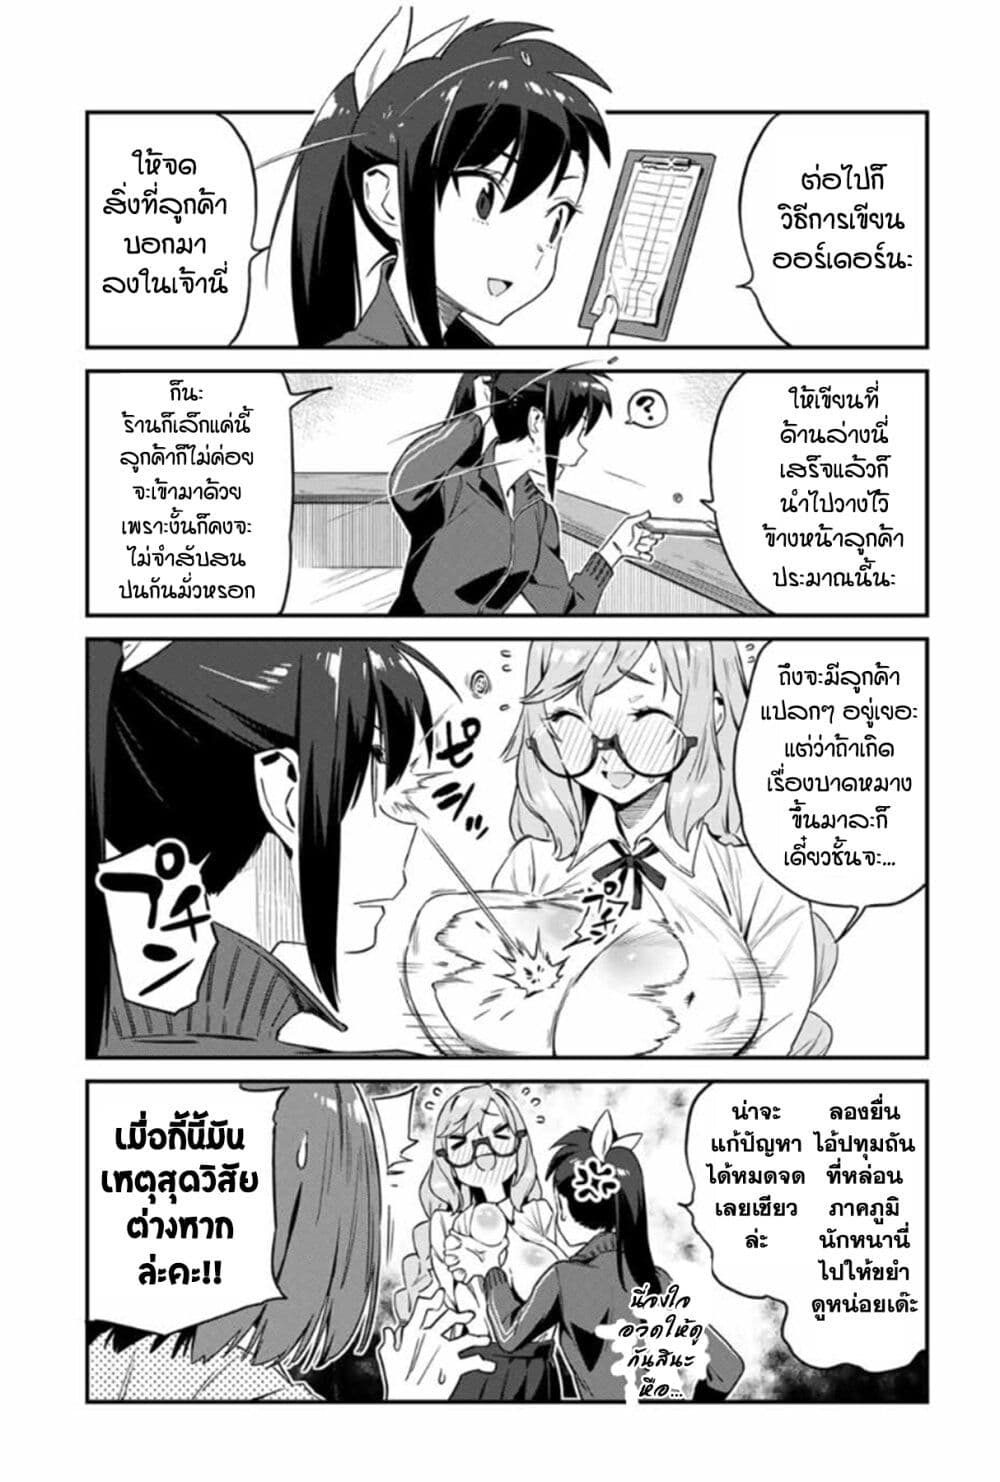 Youkai Izakaya non Bere ke 13 (6)